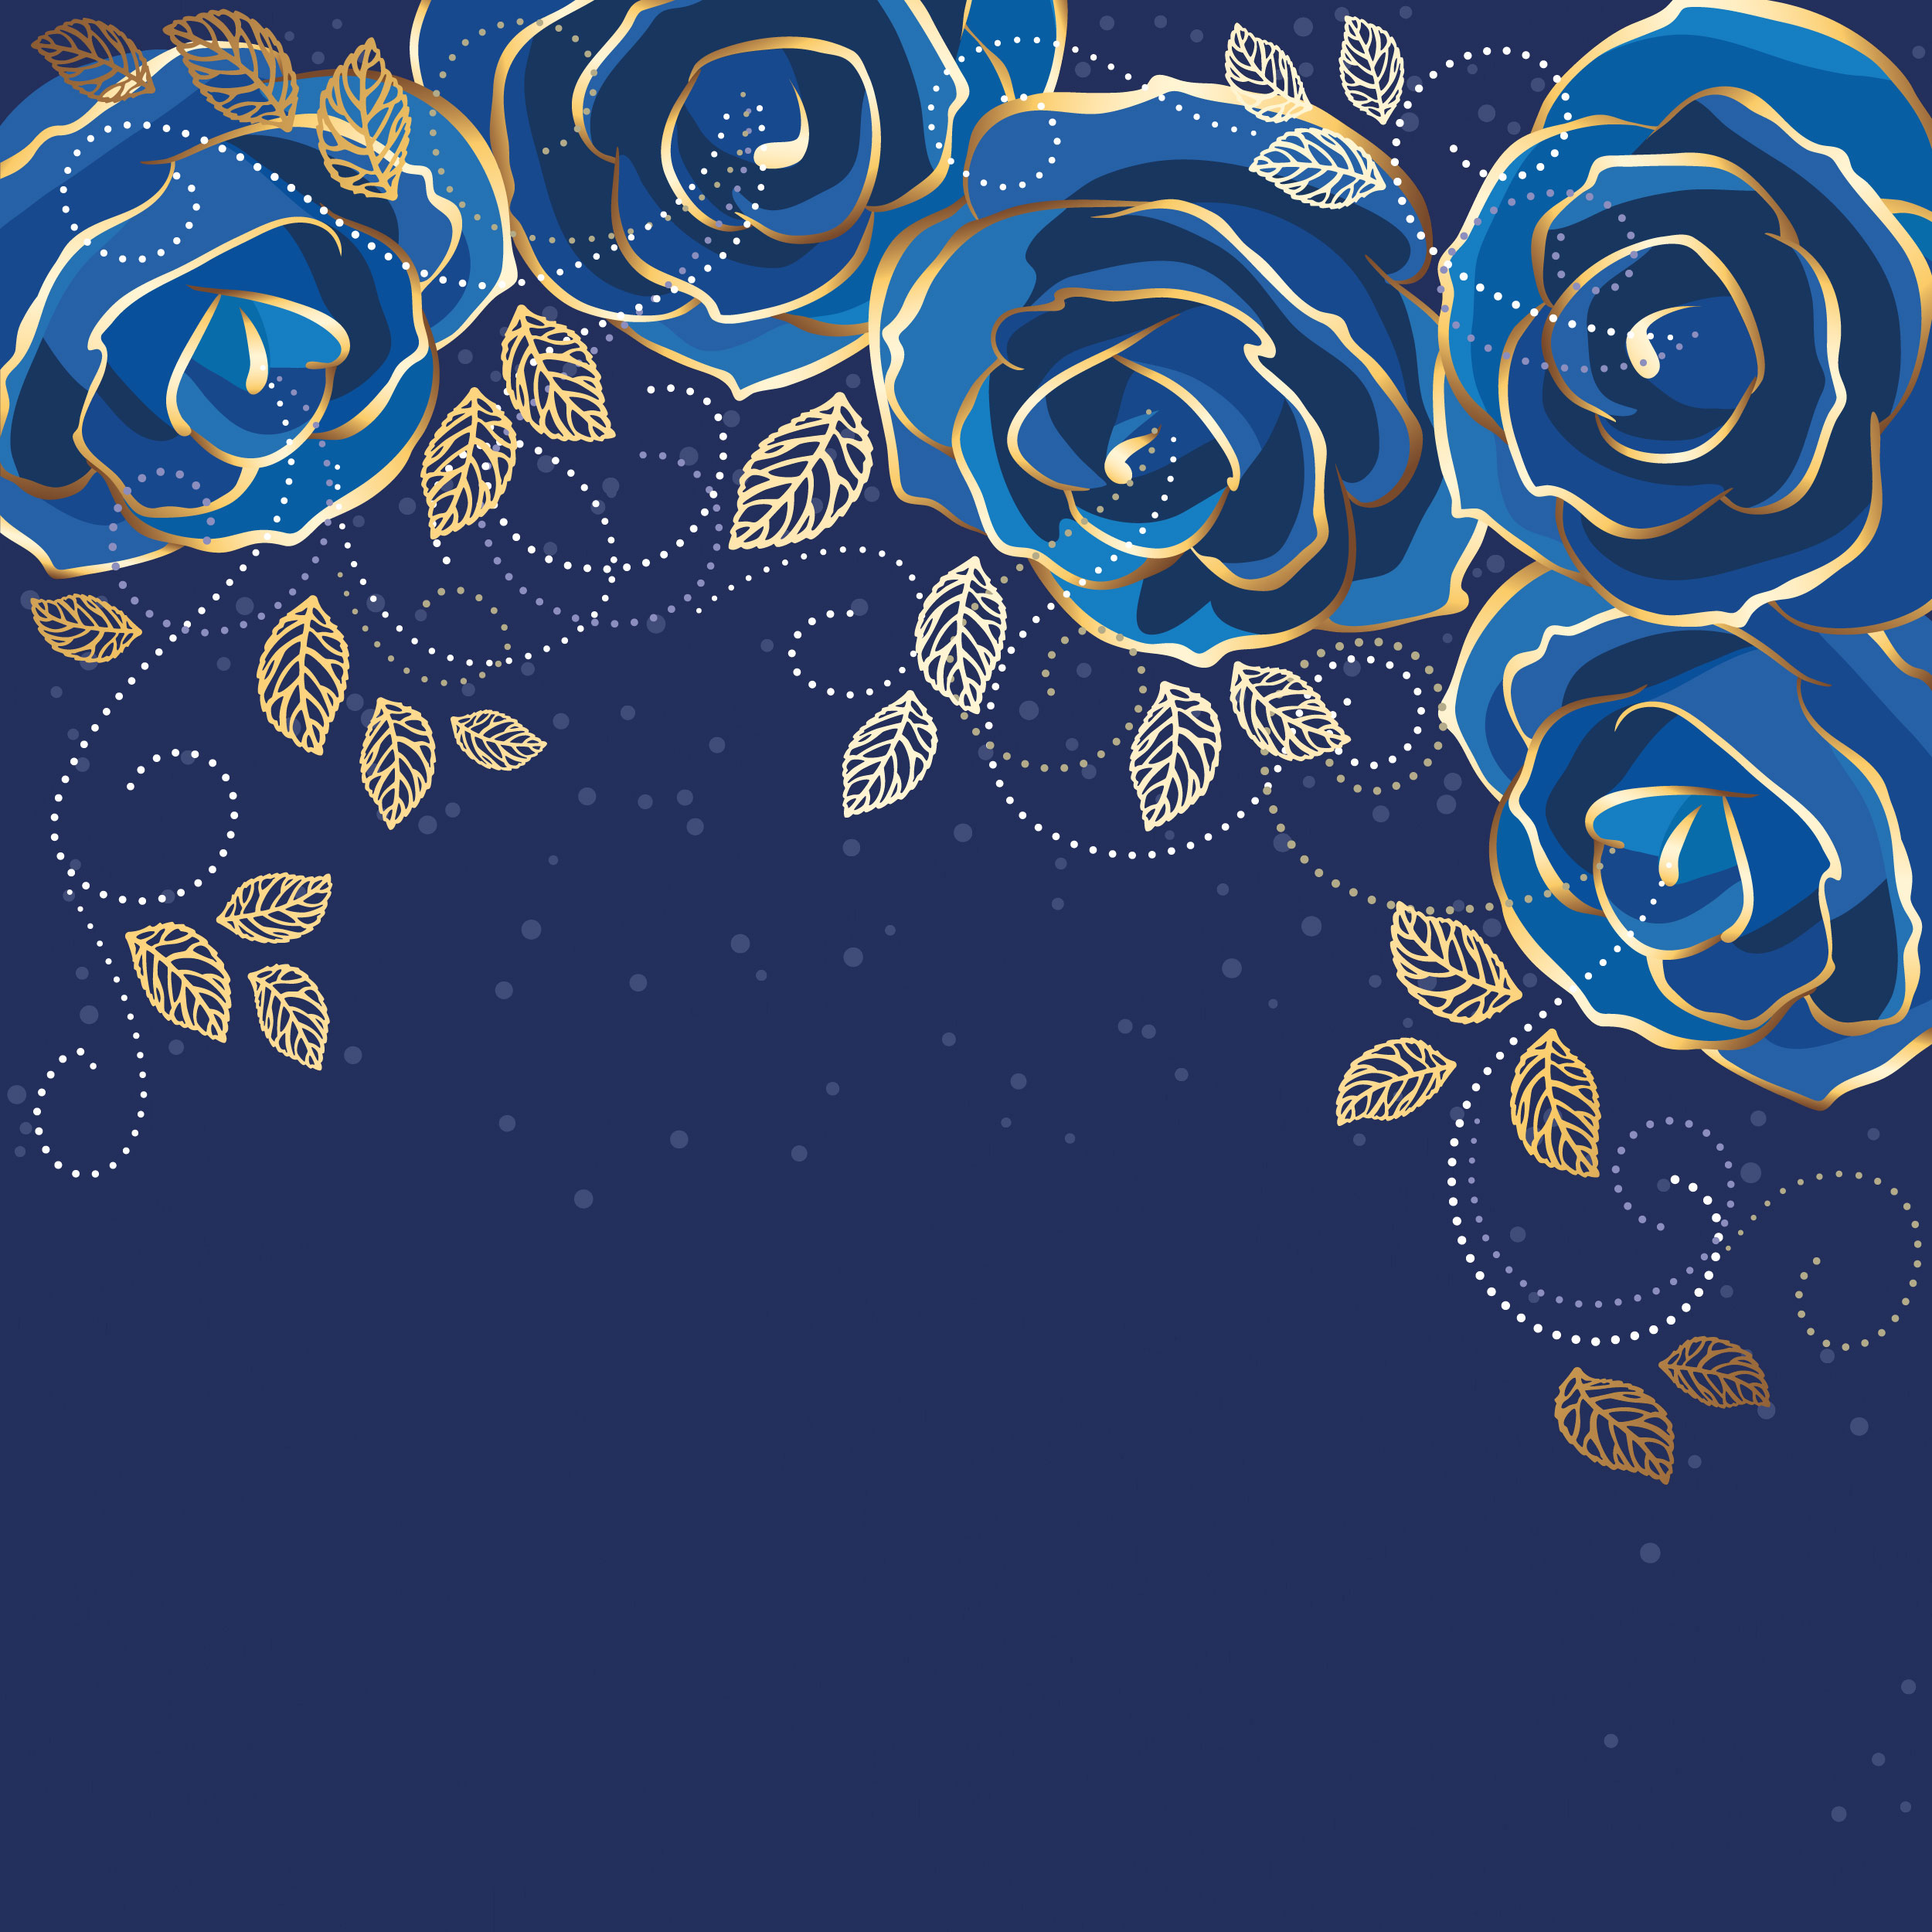 青い花のイラスト フリー素材 背景 壁紙no 351 青いバラ 金色葉